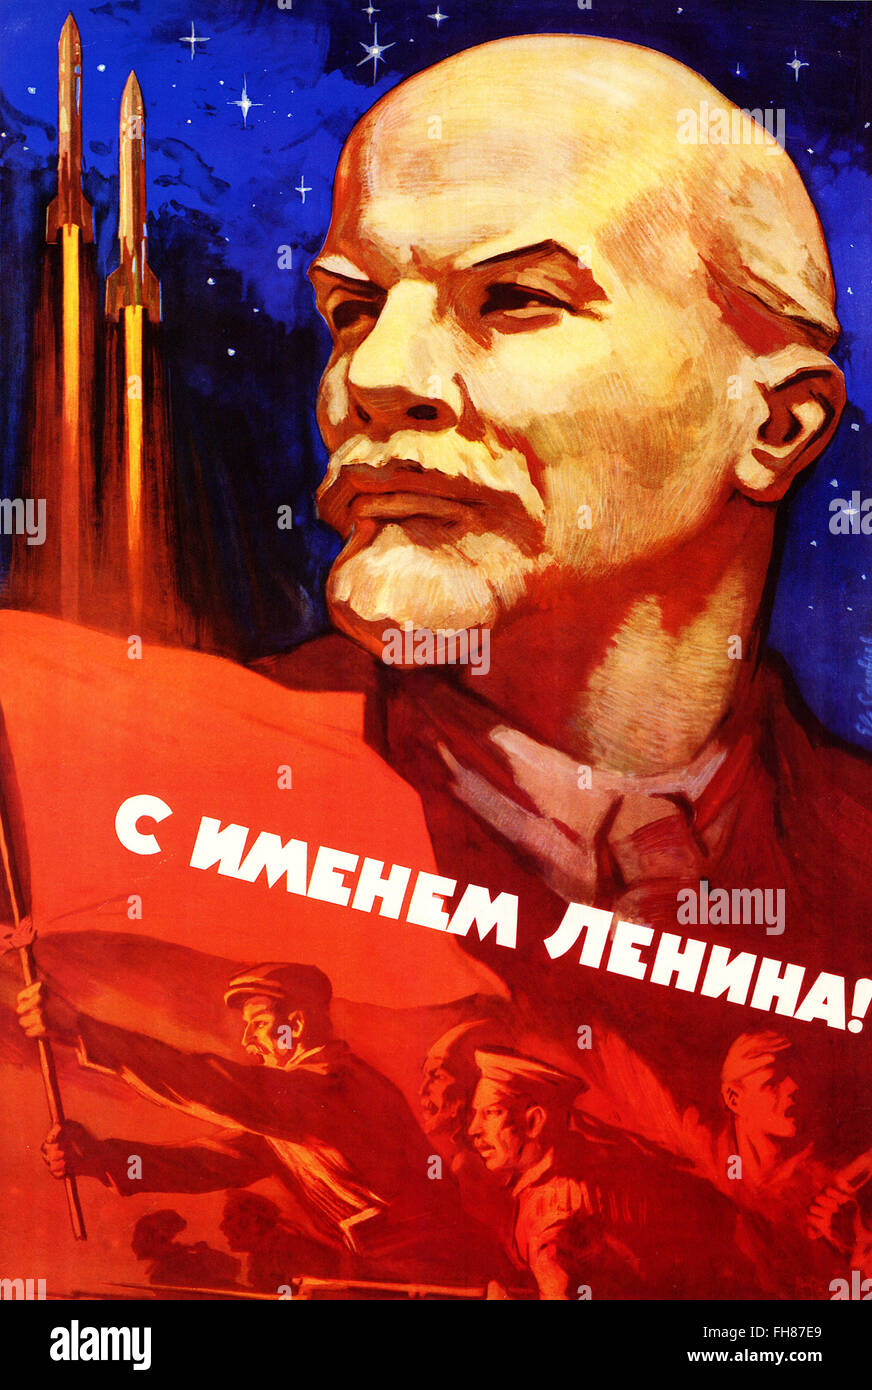 Le programme spatial soviétique affiche de propagande - Lenine Banque D'Images